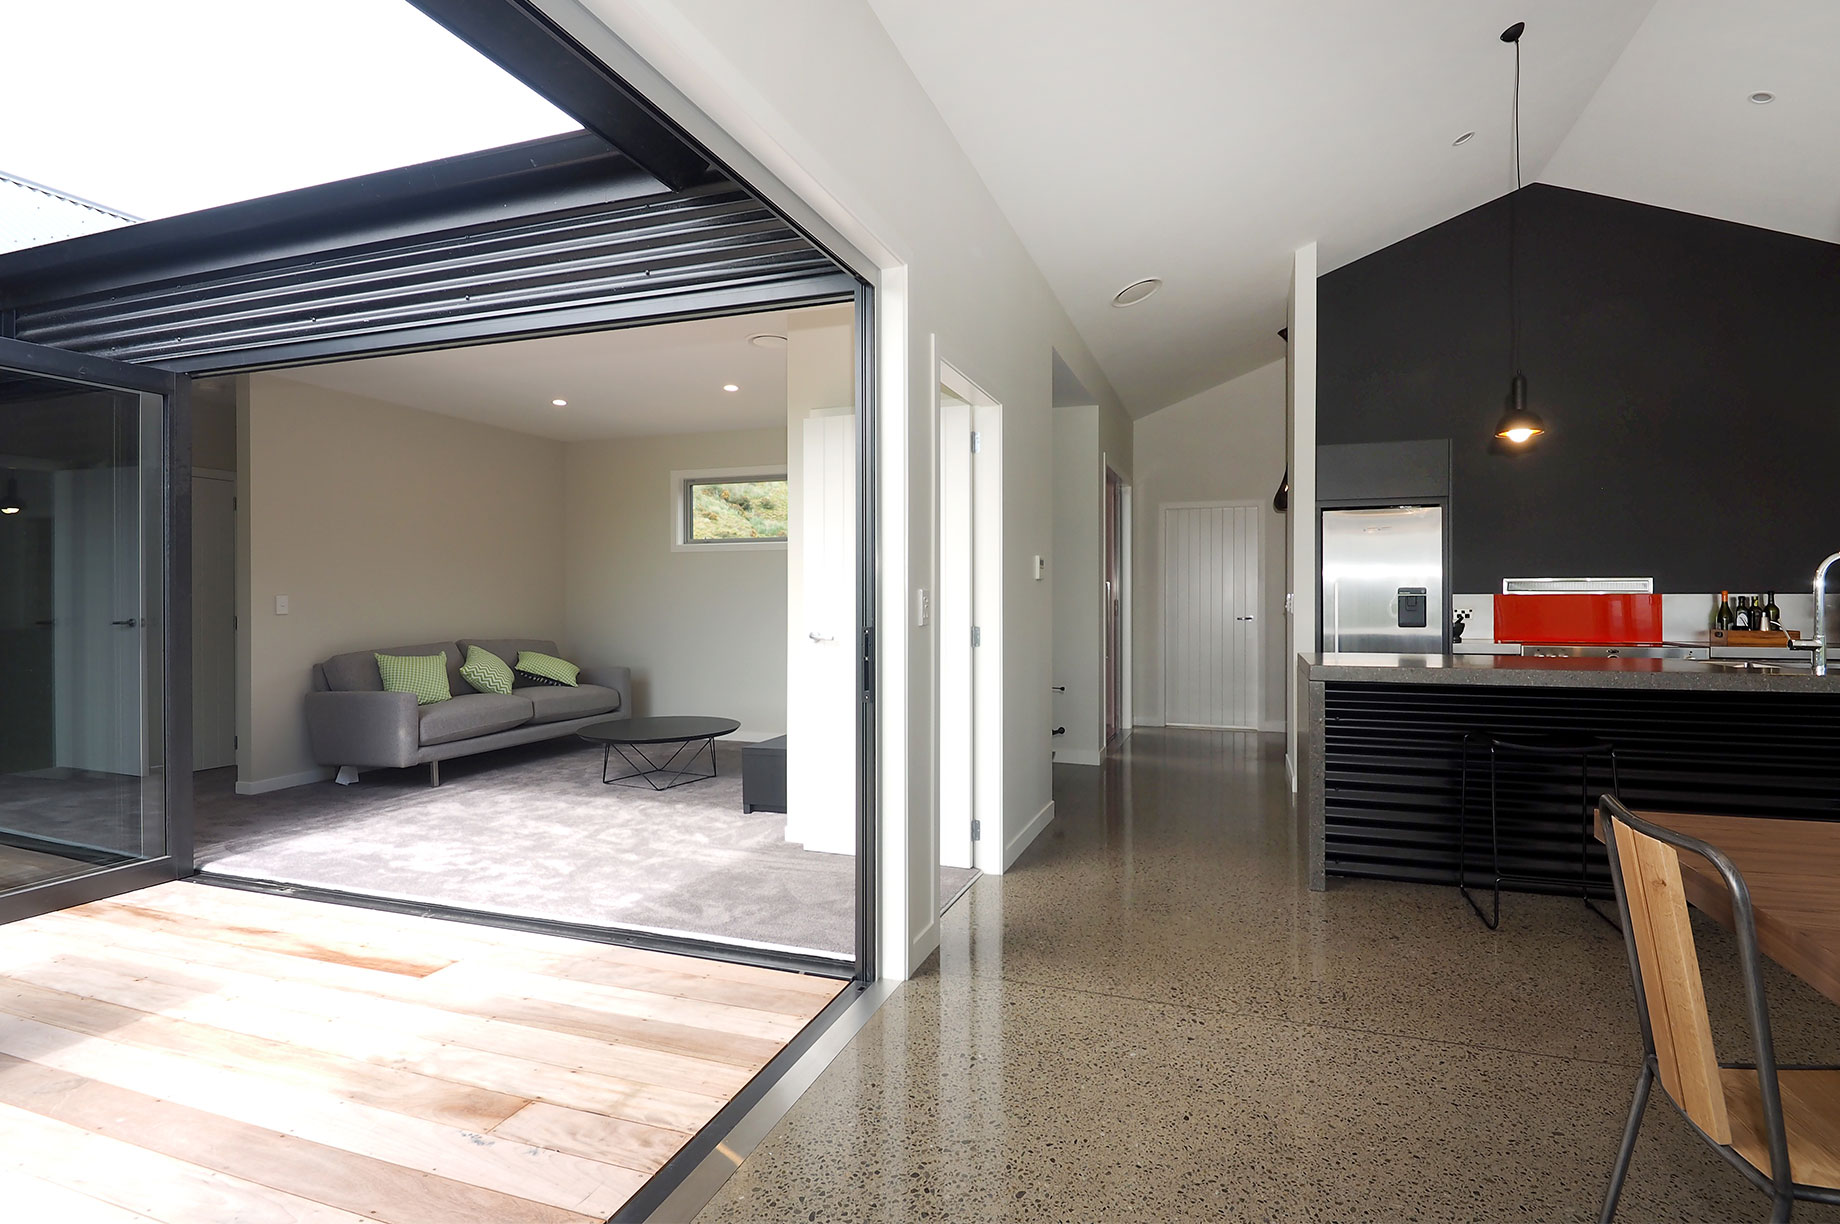 Flow between indoor living space and outdoor living space